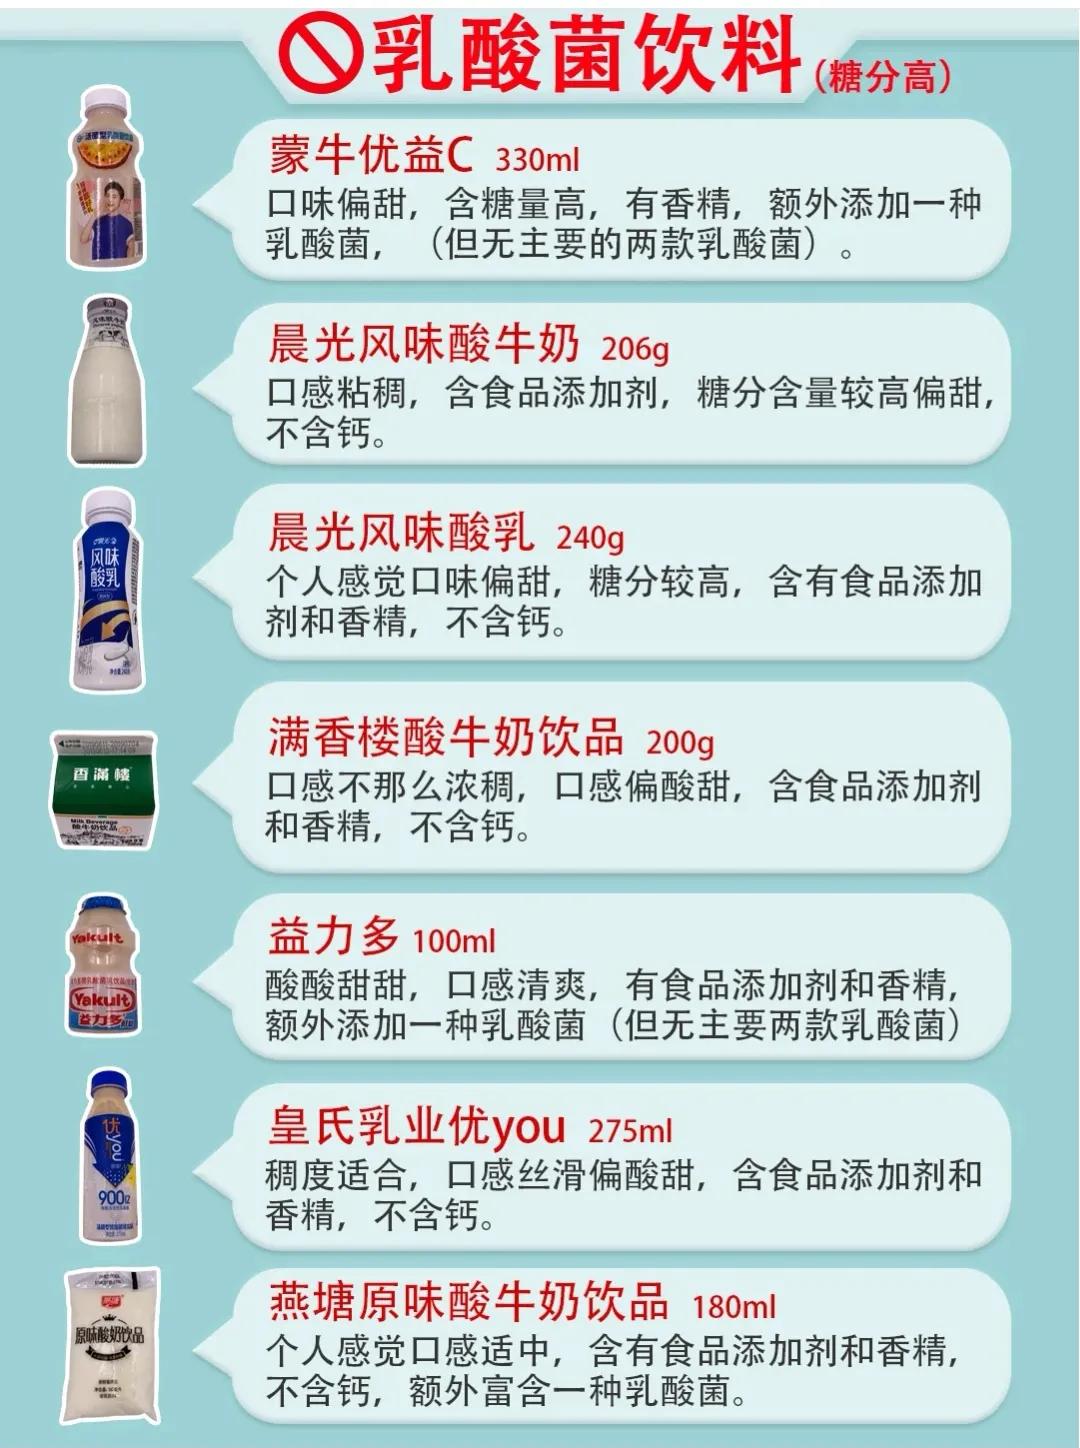 吾岛 Lite系列酸奶 | Foodaily每日食品